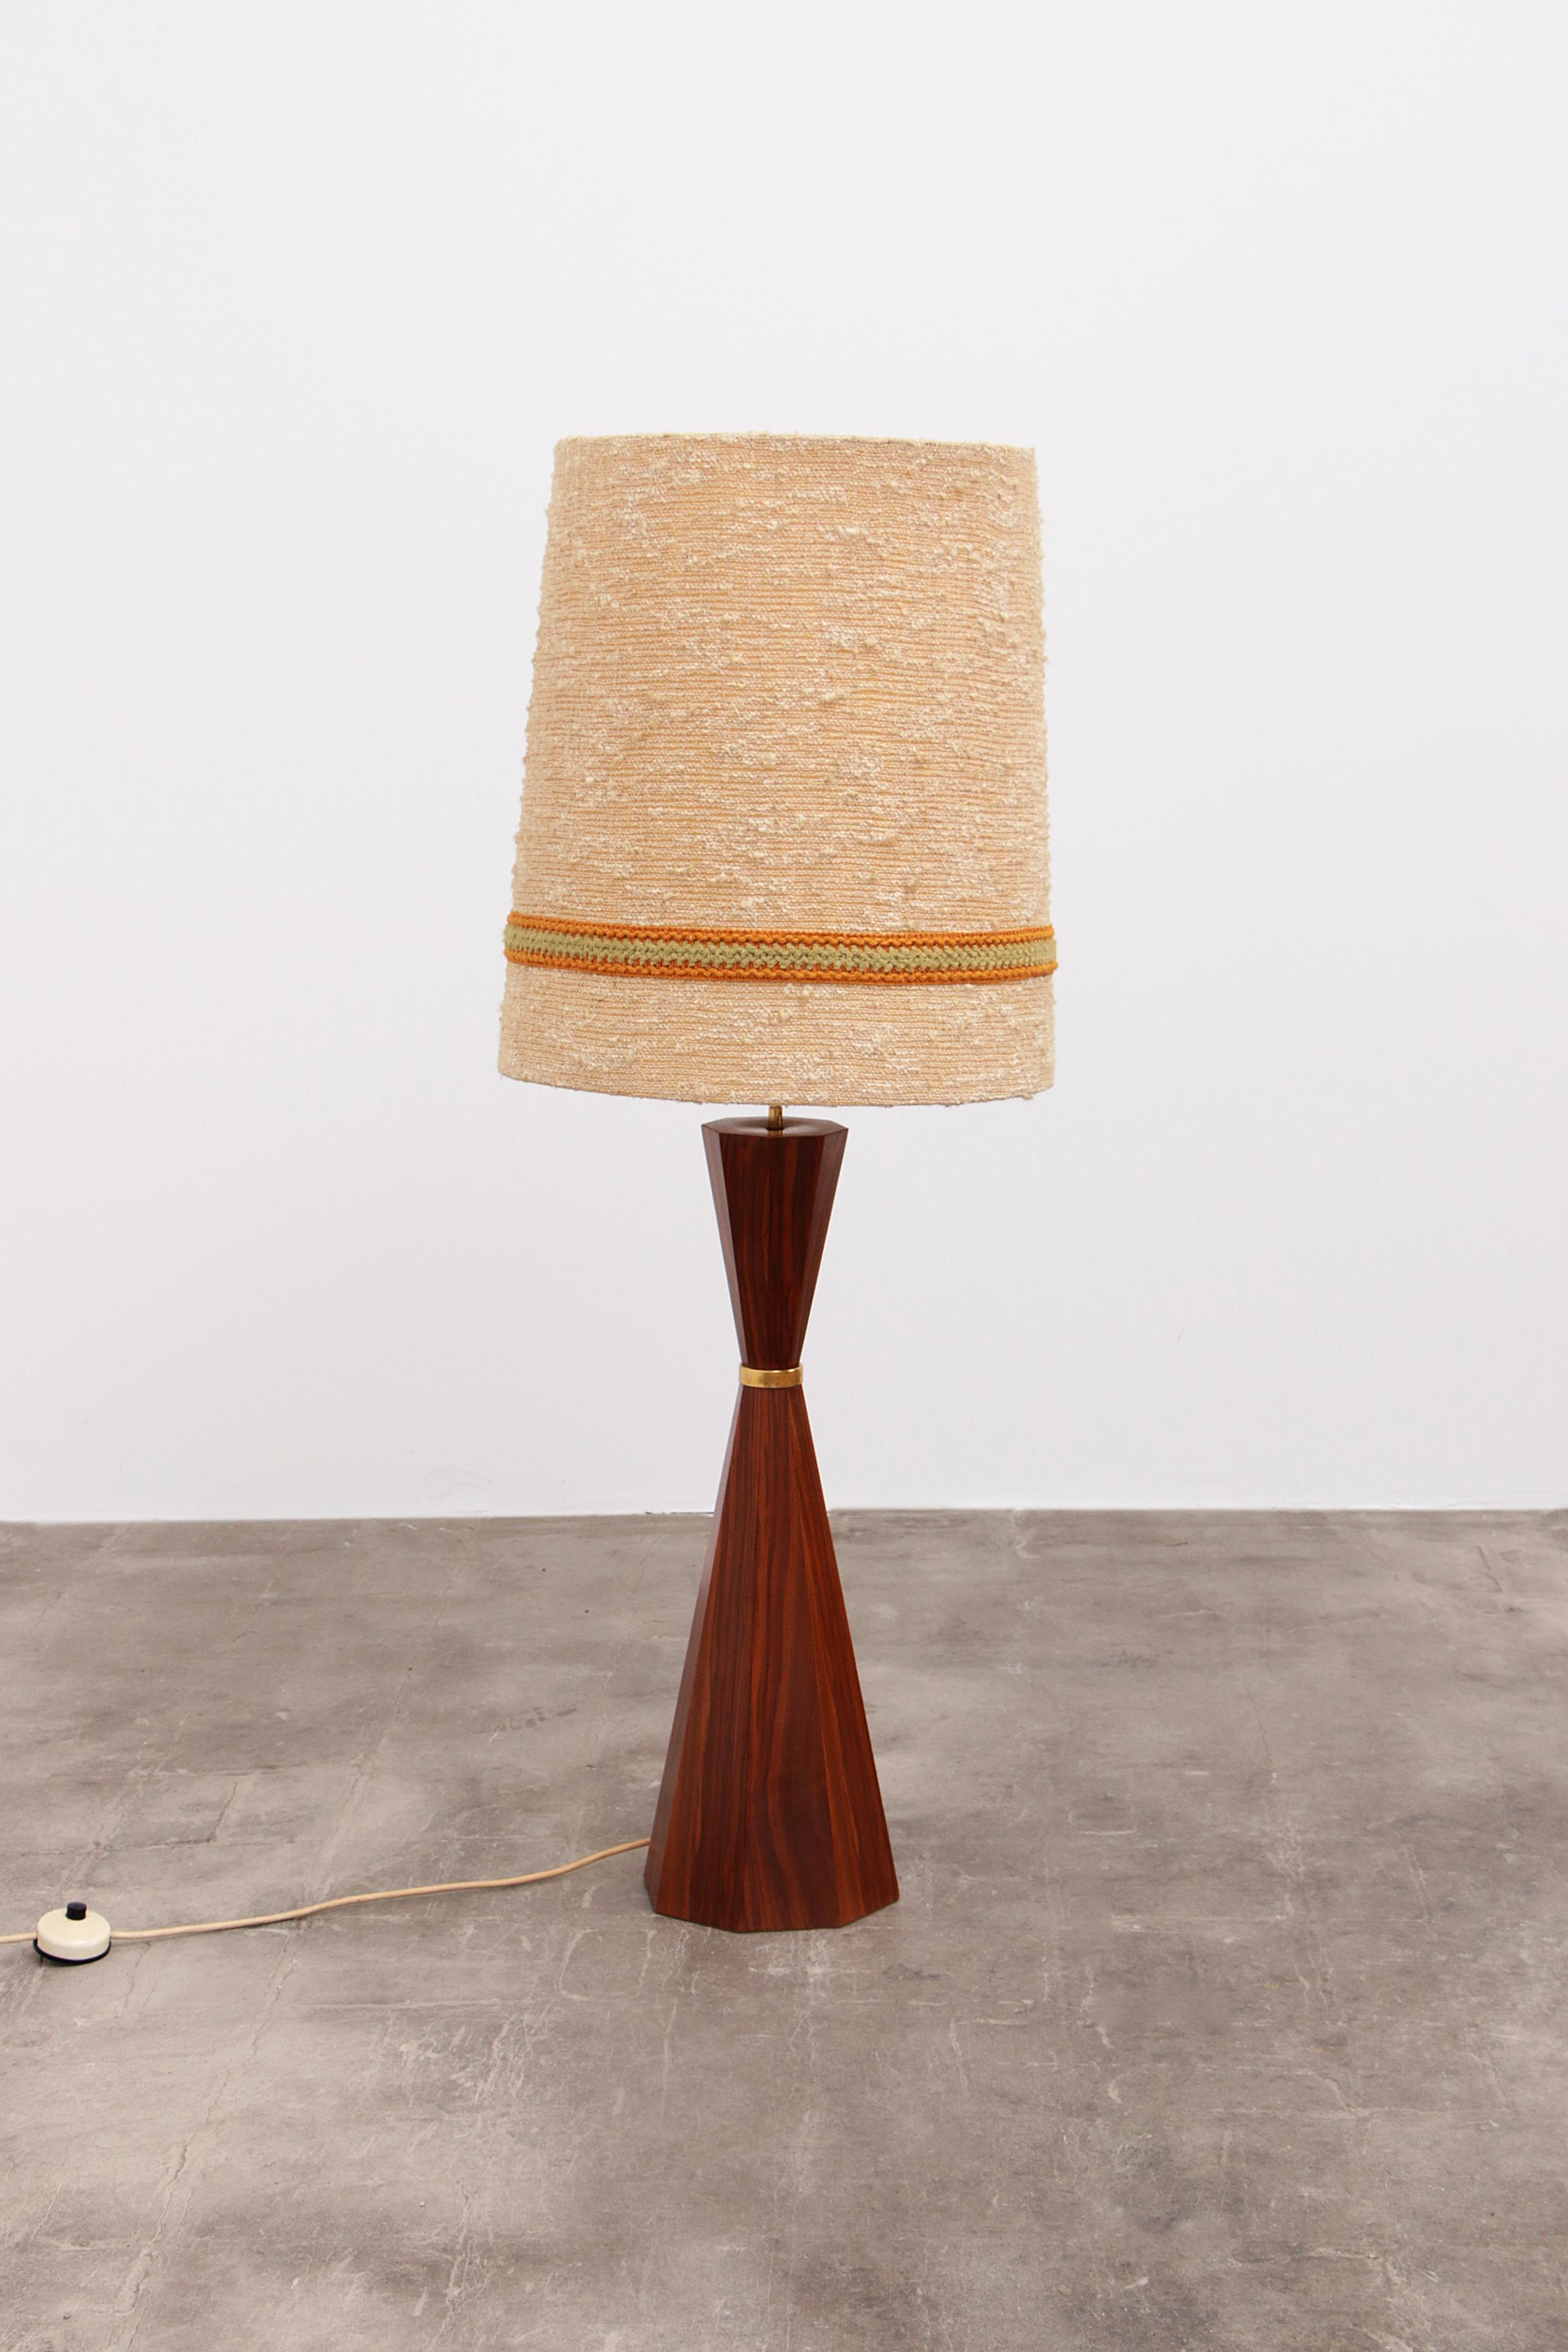 Lampadaire avec base en bois et abat-jour original, années 60 Lampadaire en teck danois vintage avec abat-jour original - années 60


Découvrez le charme du design danois authentique avec notre lampadaire en teck vintage des années 60. Ce lampadaire